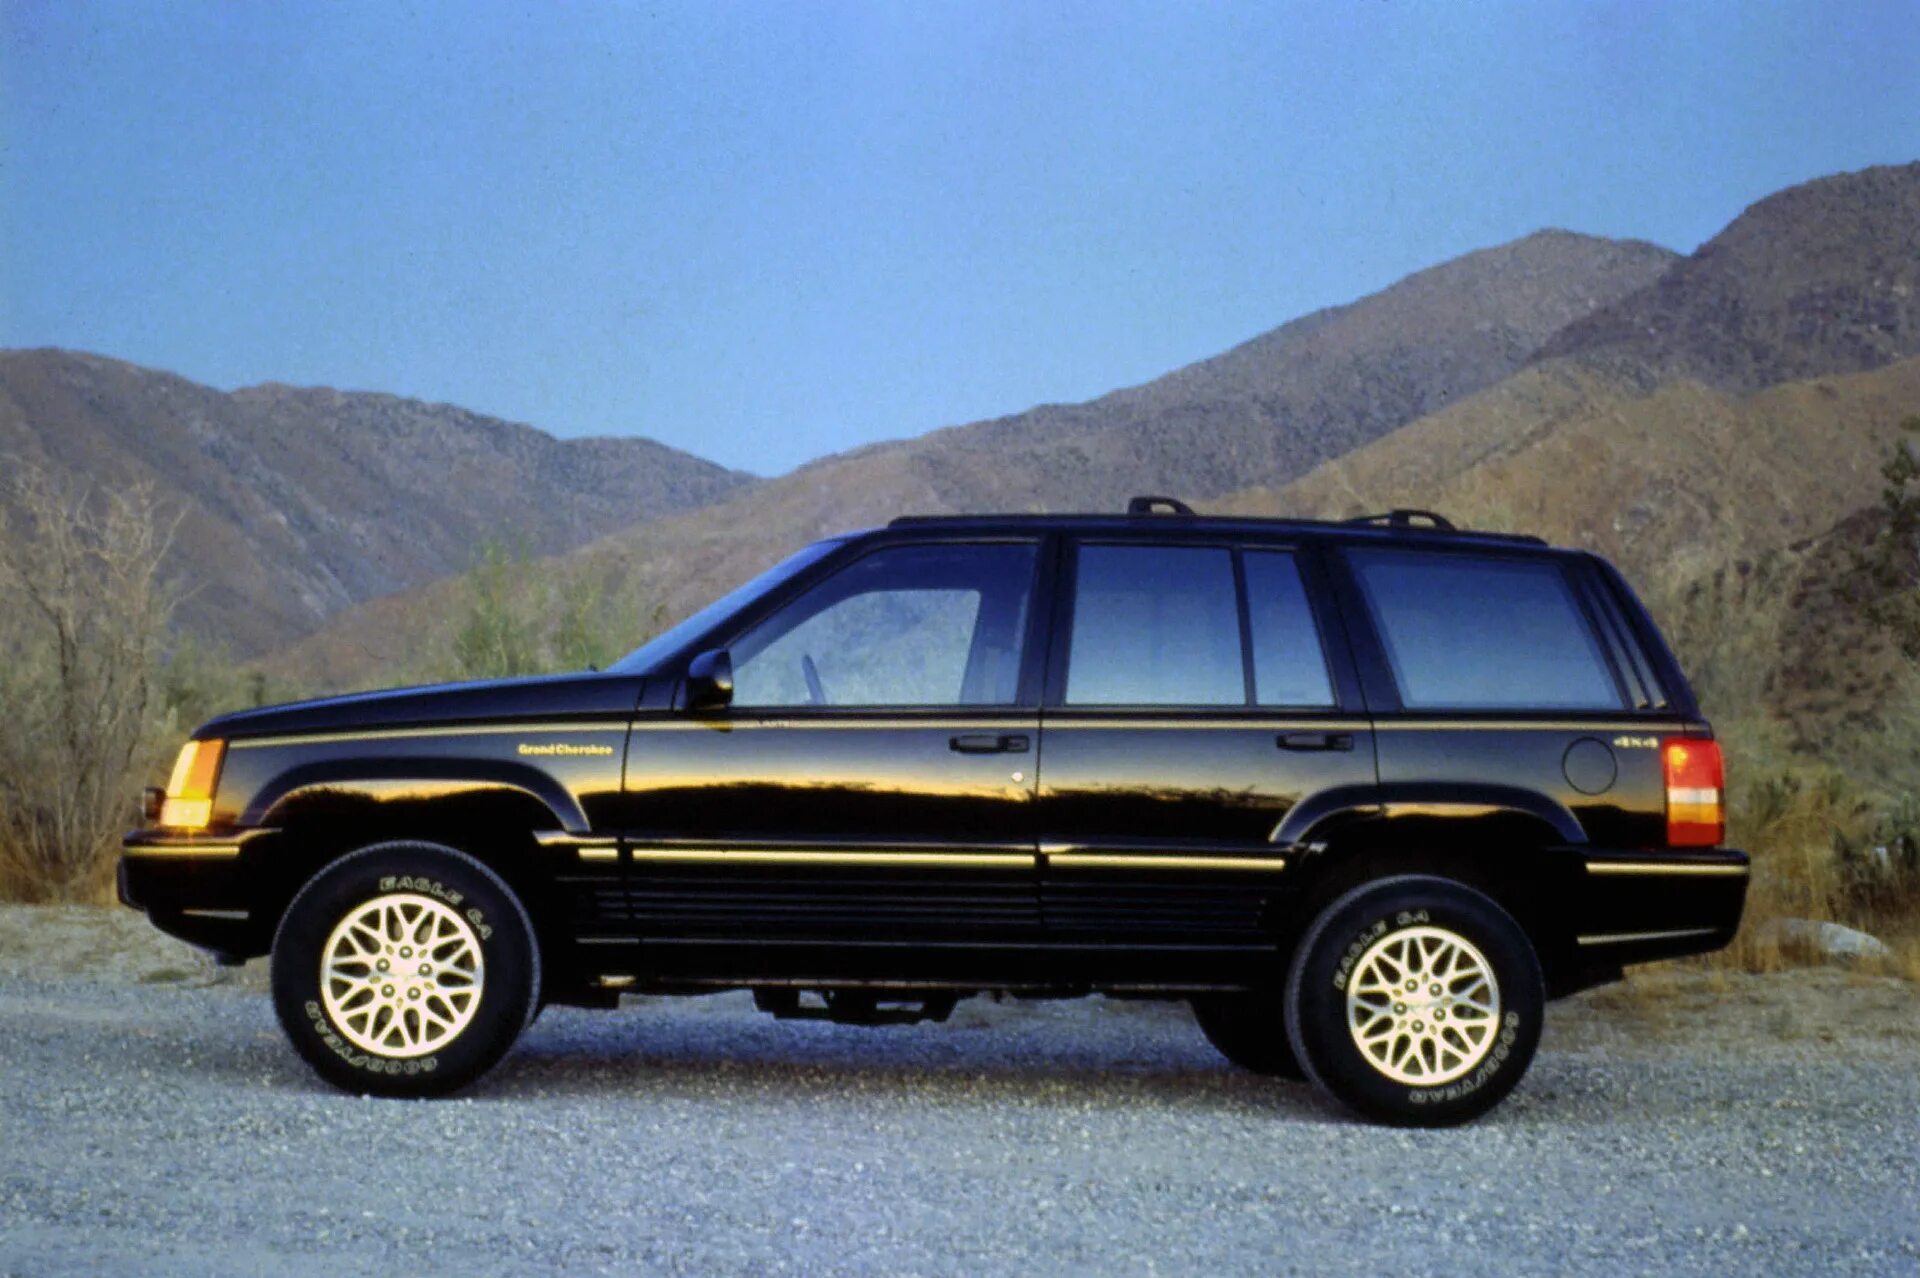 Jeep zj. Jeep Grand Cherokee ZJ 1993. Jeep Grand Cherokee 1995. Jeep Grand Cherokee Limited 1993. Jeep Grand Cherokee 1992.